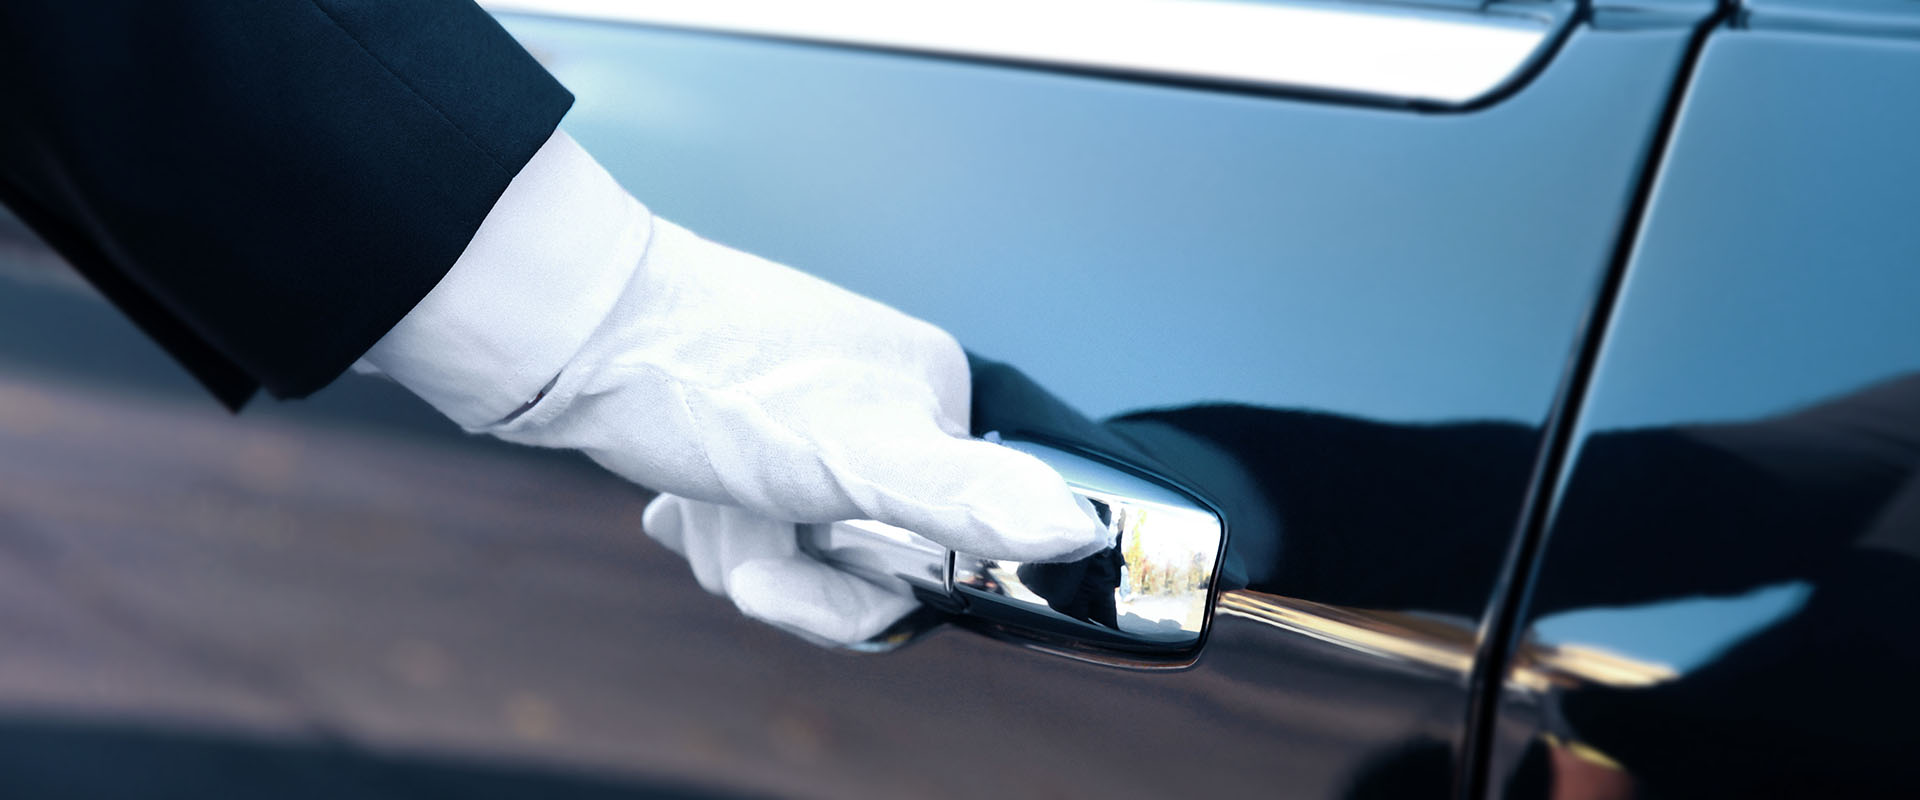 valet's hand in white glove opening car door